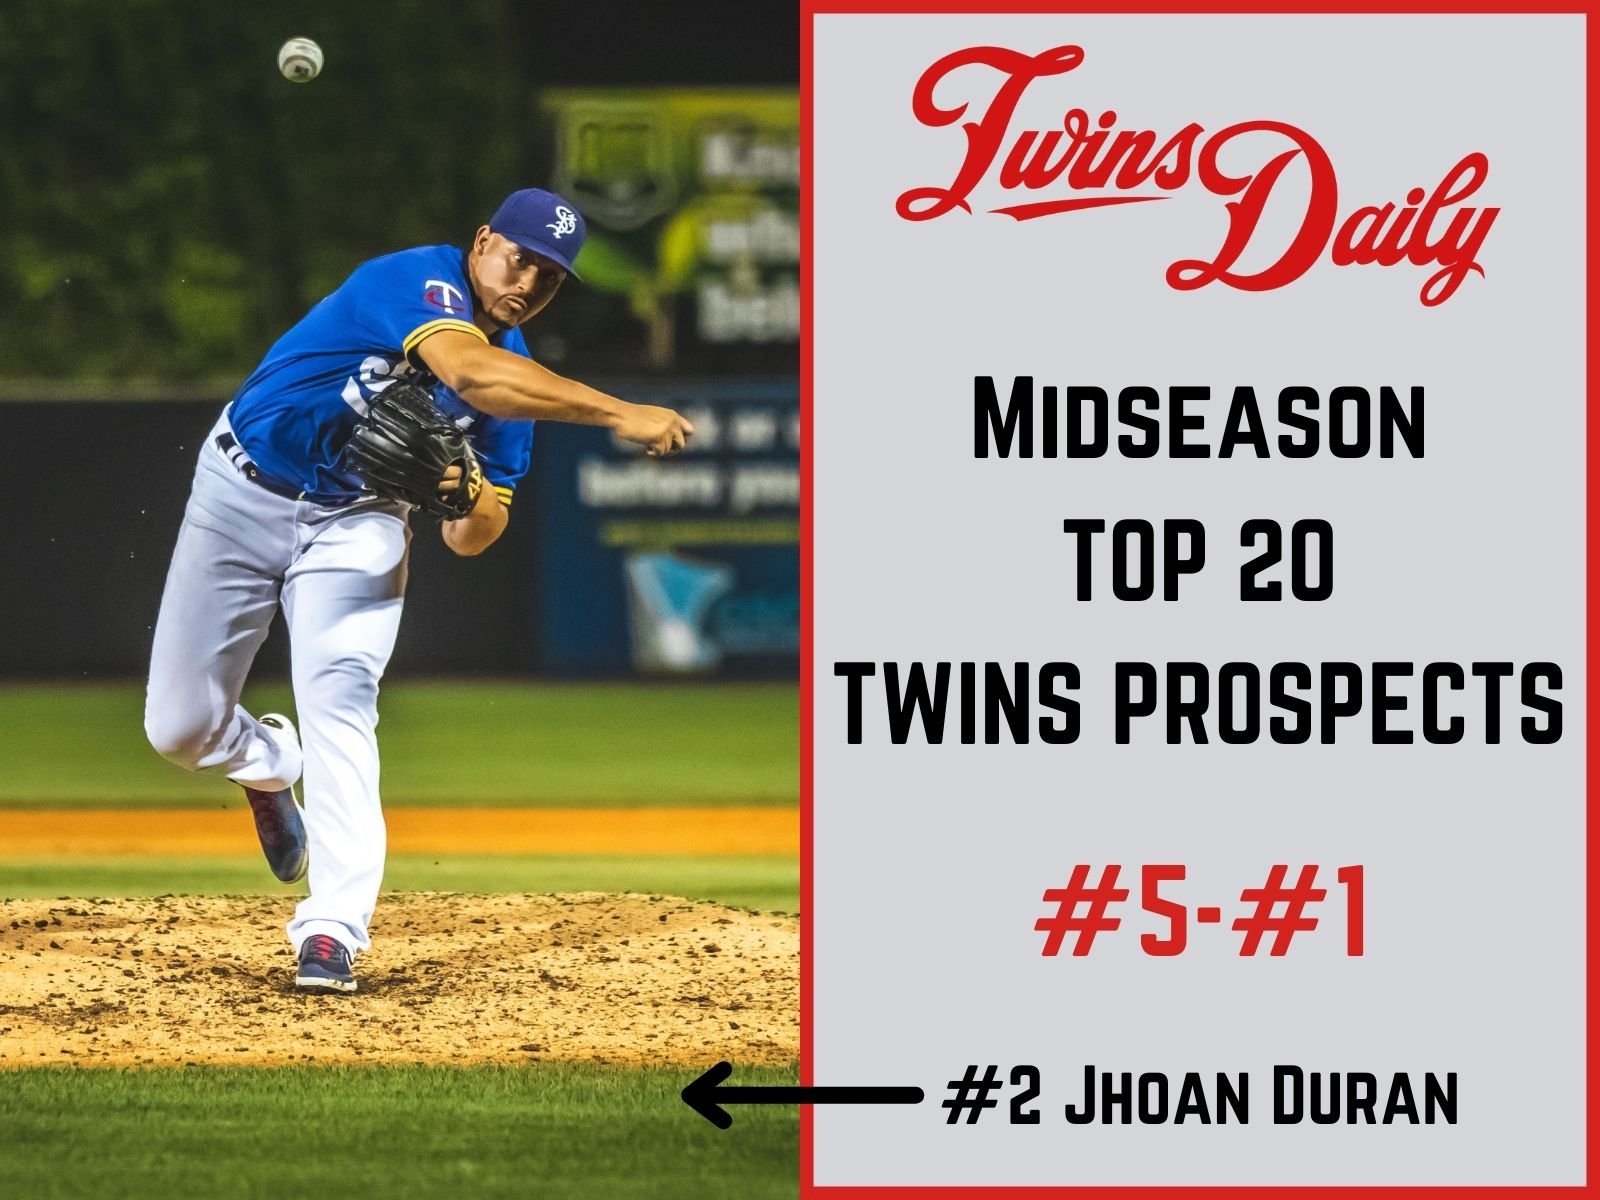 TD Midseason Top 20 Twins Prospect Rankings: 1-5 - Minor Leagues